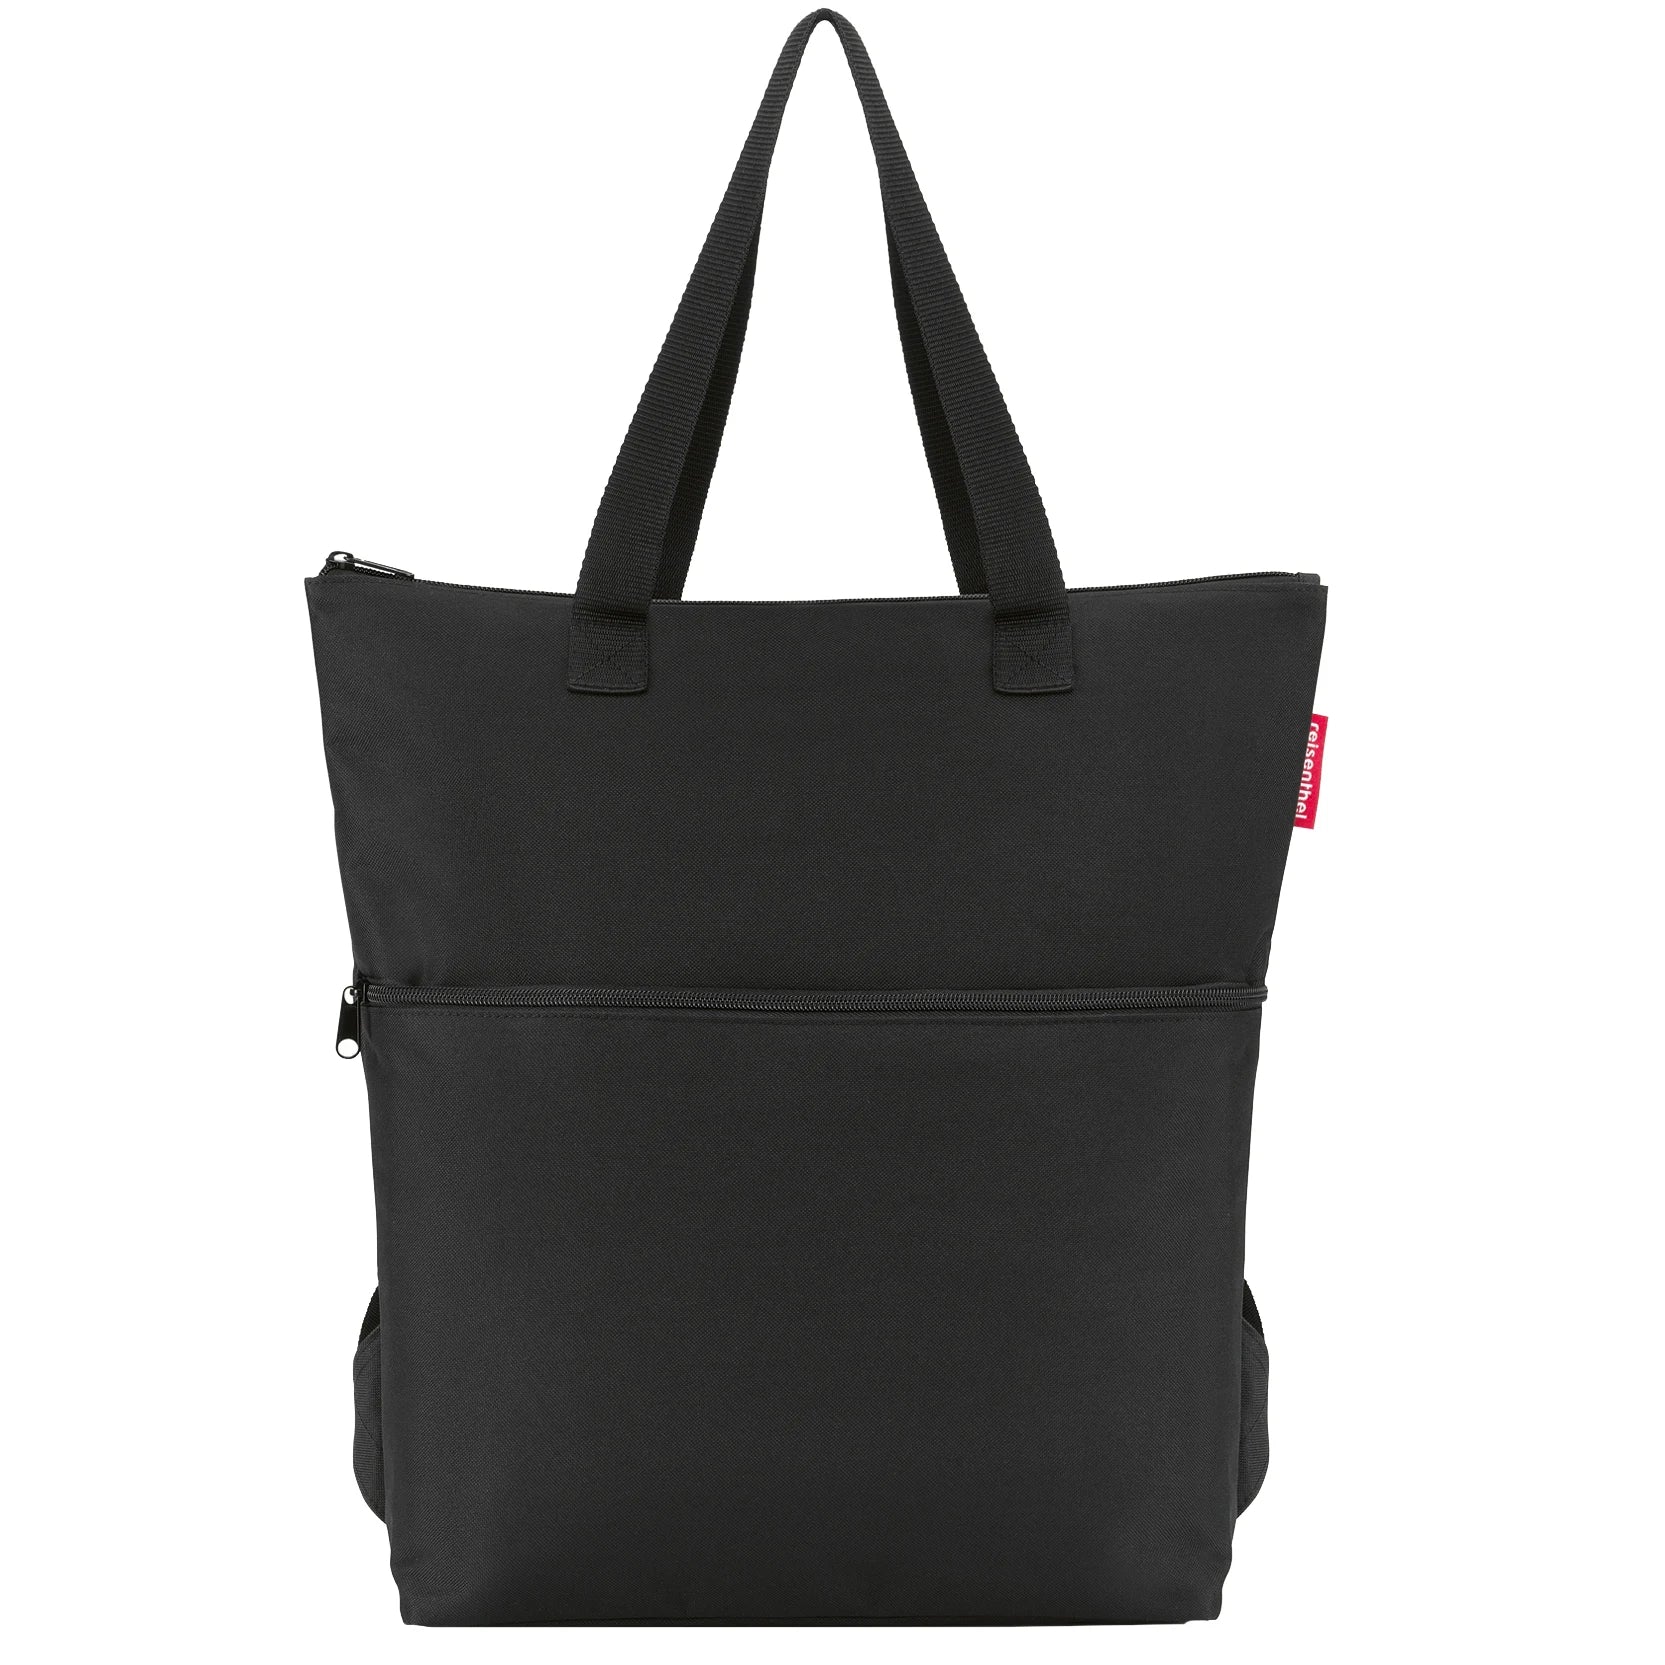 Reisenthel Shopping Cooler-Backpack 43 cm - Black